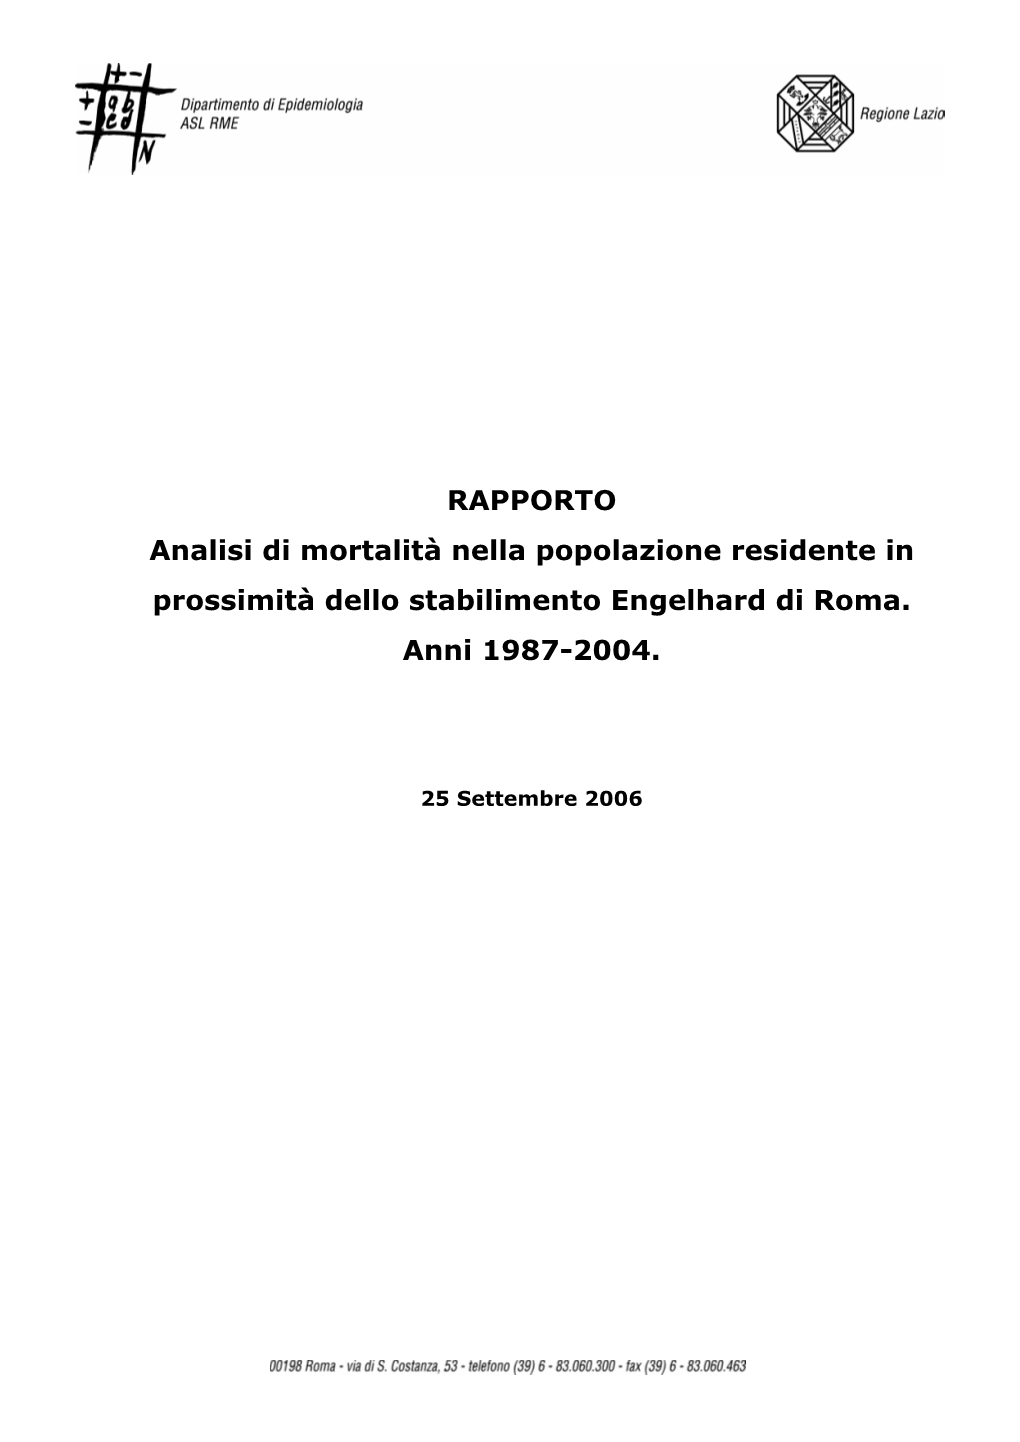 RAPPORTO Analisi Di Mortalità Nella Popolazione Residente in Prossimità Dello Stabilimento Engelhard Di Roma